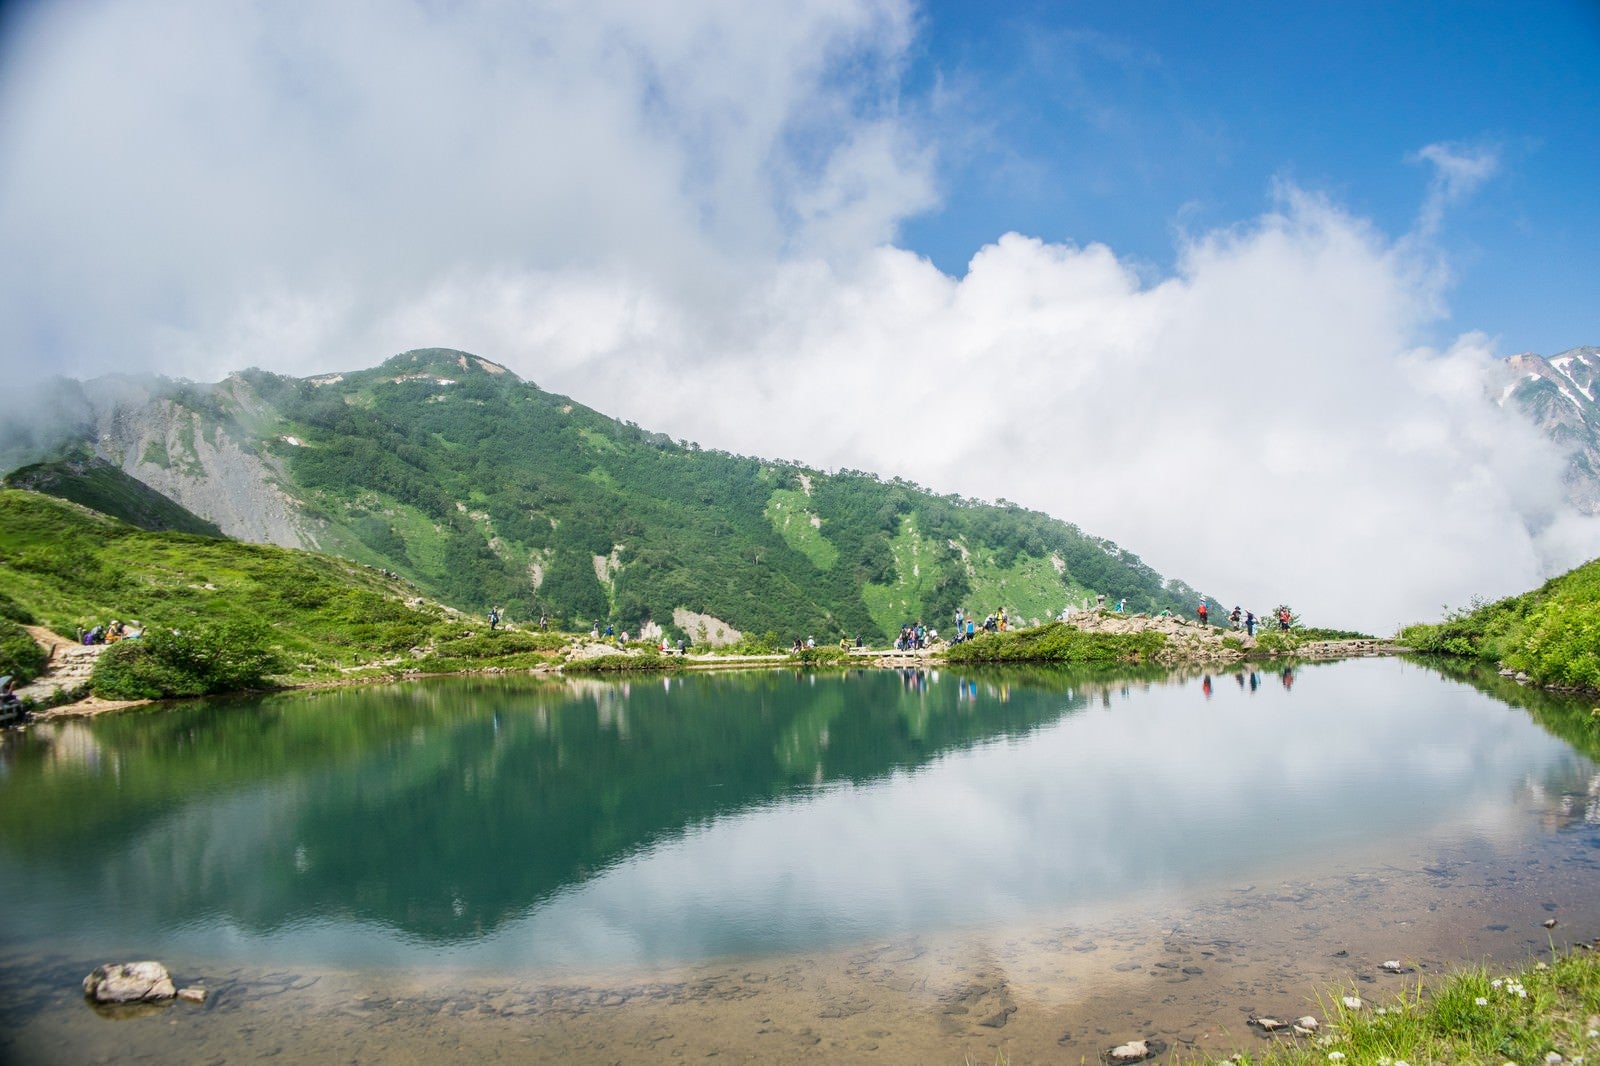 「湖畔で休む登山者と水鏡に映る山」の写真